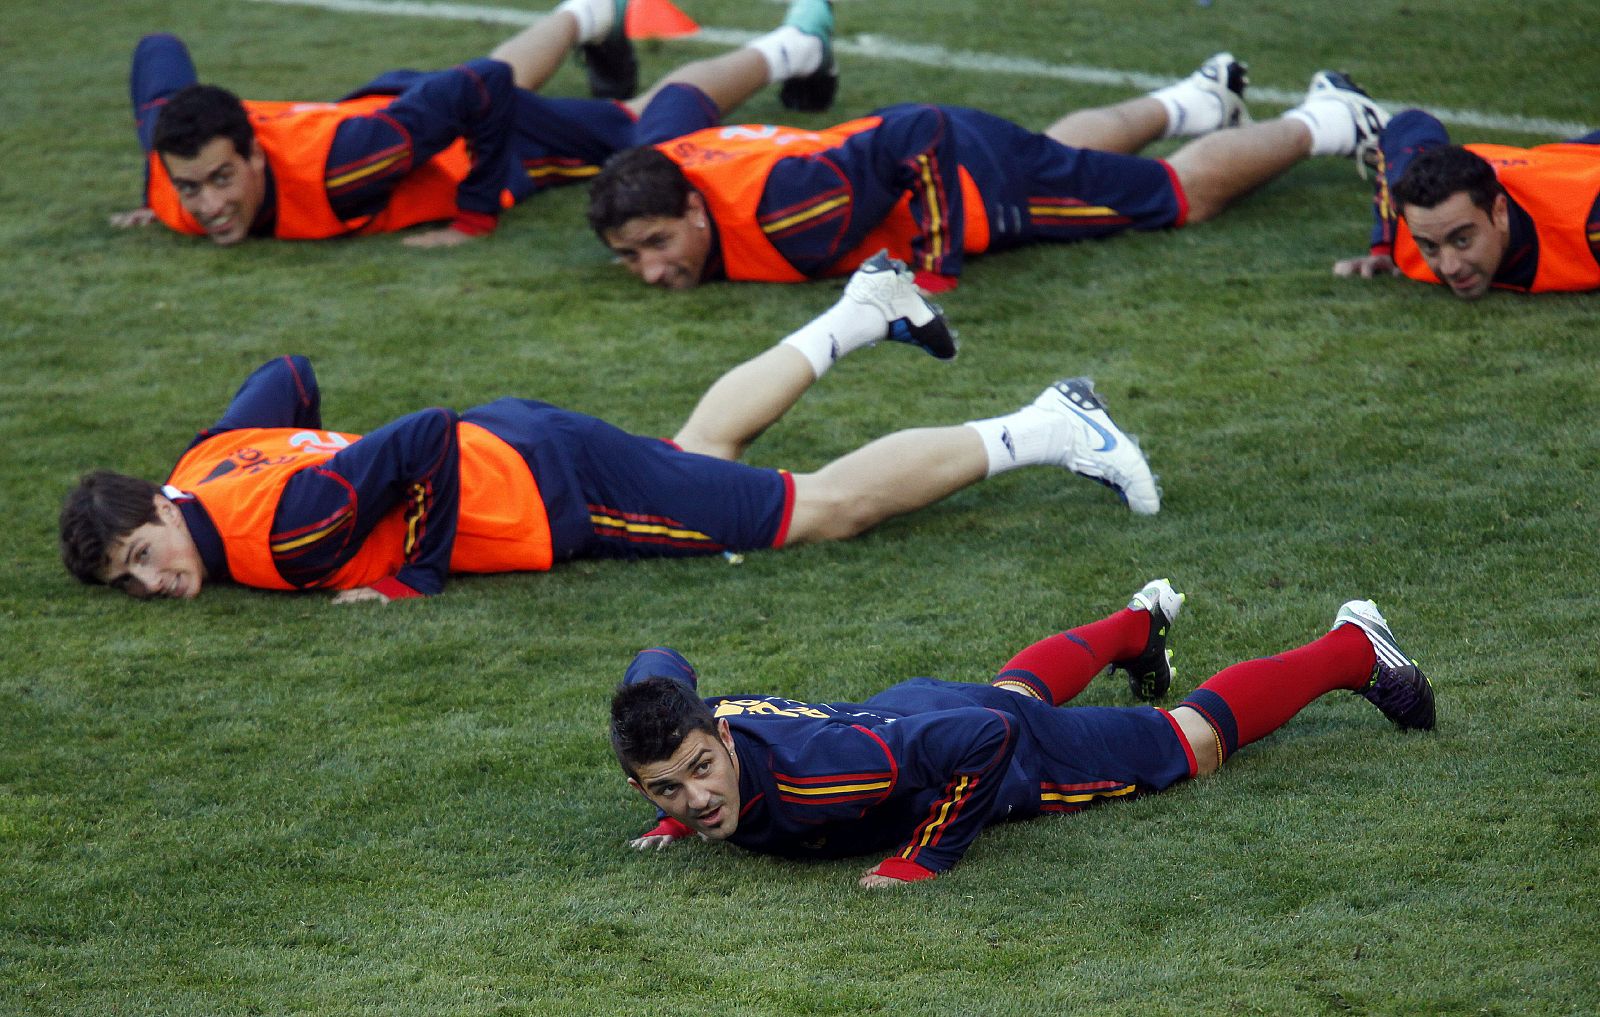 Los jugadores de la selección española, cuerpo a tierra en uno de los ejercicios del entrenamiento previo al amistoso ante Argentina, en el estadio de 'La Bombonera' de Boca Juniors.